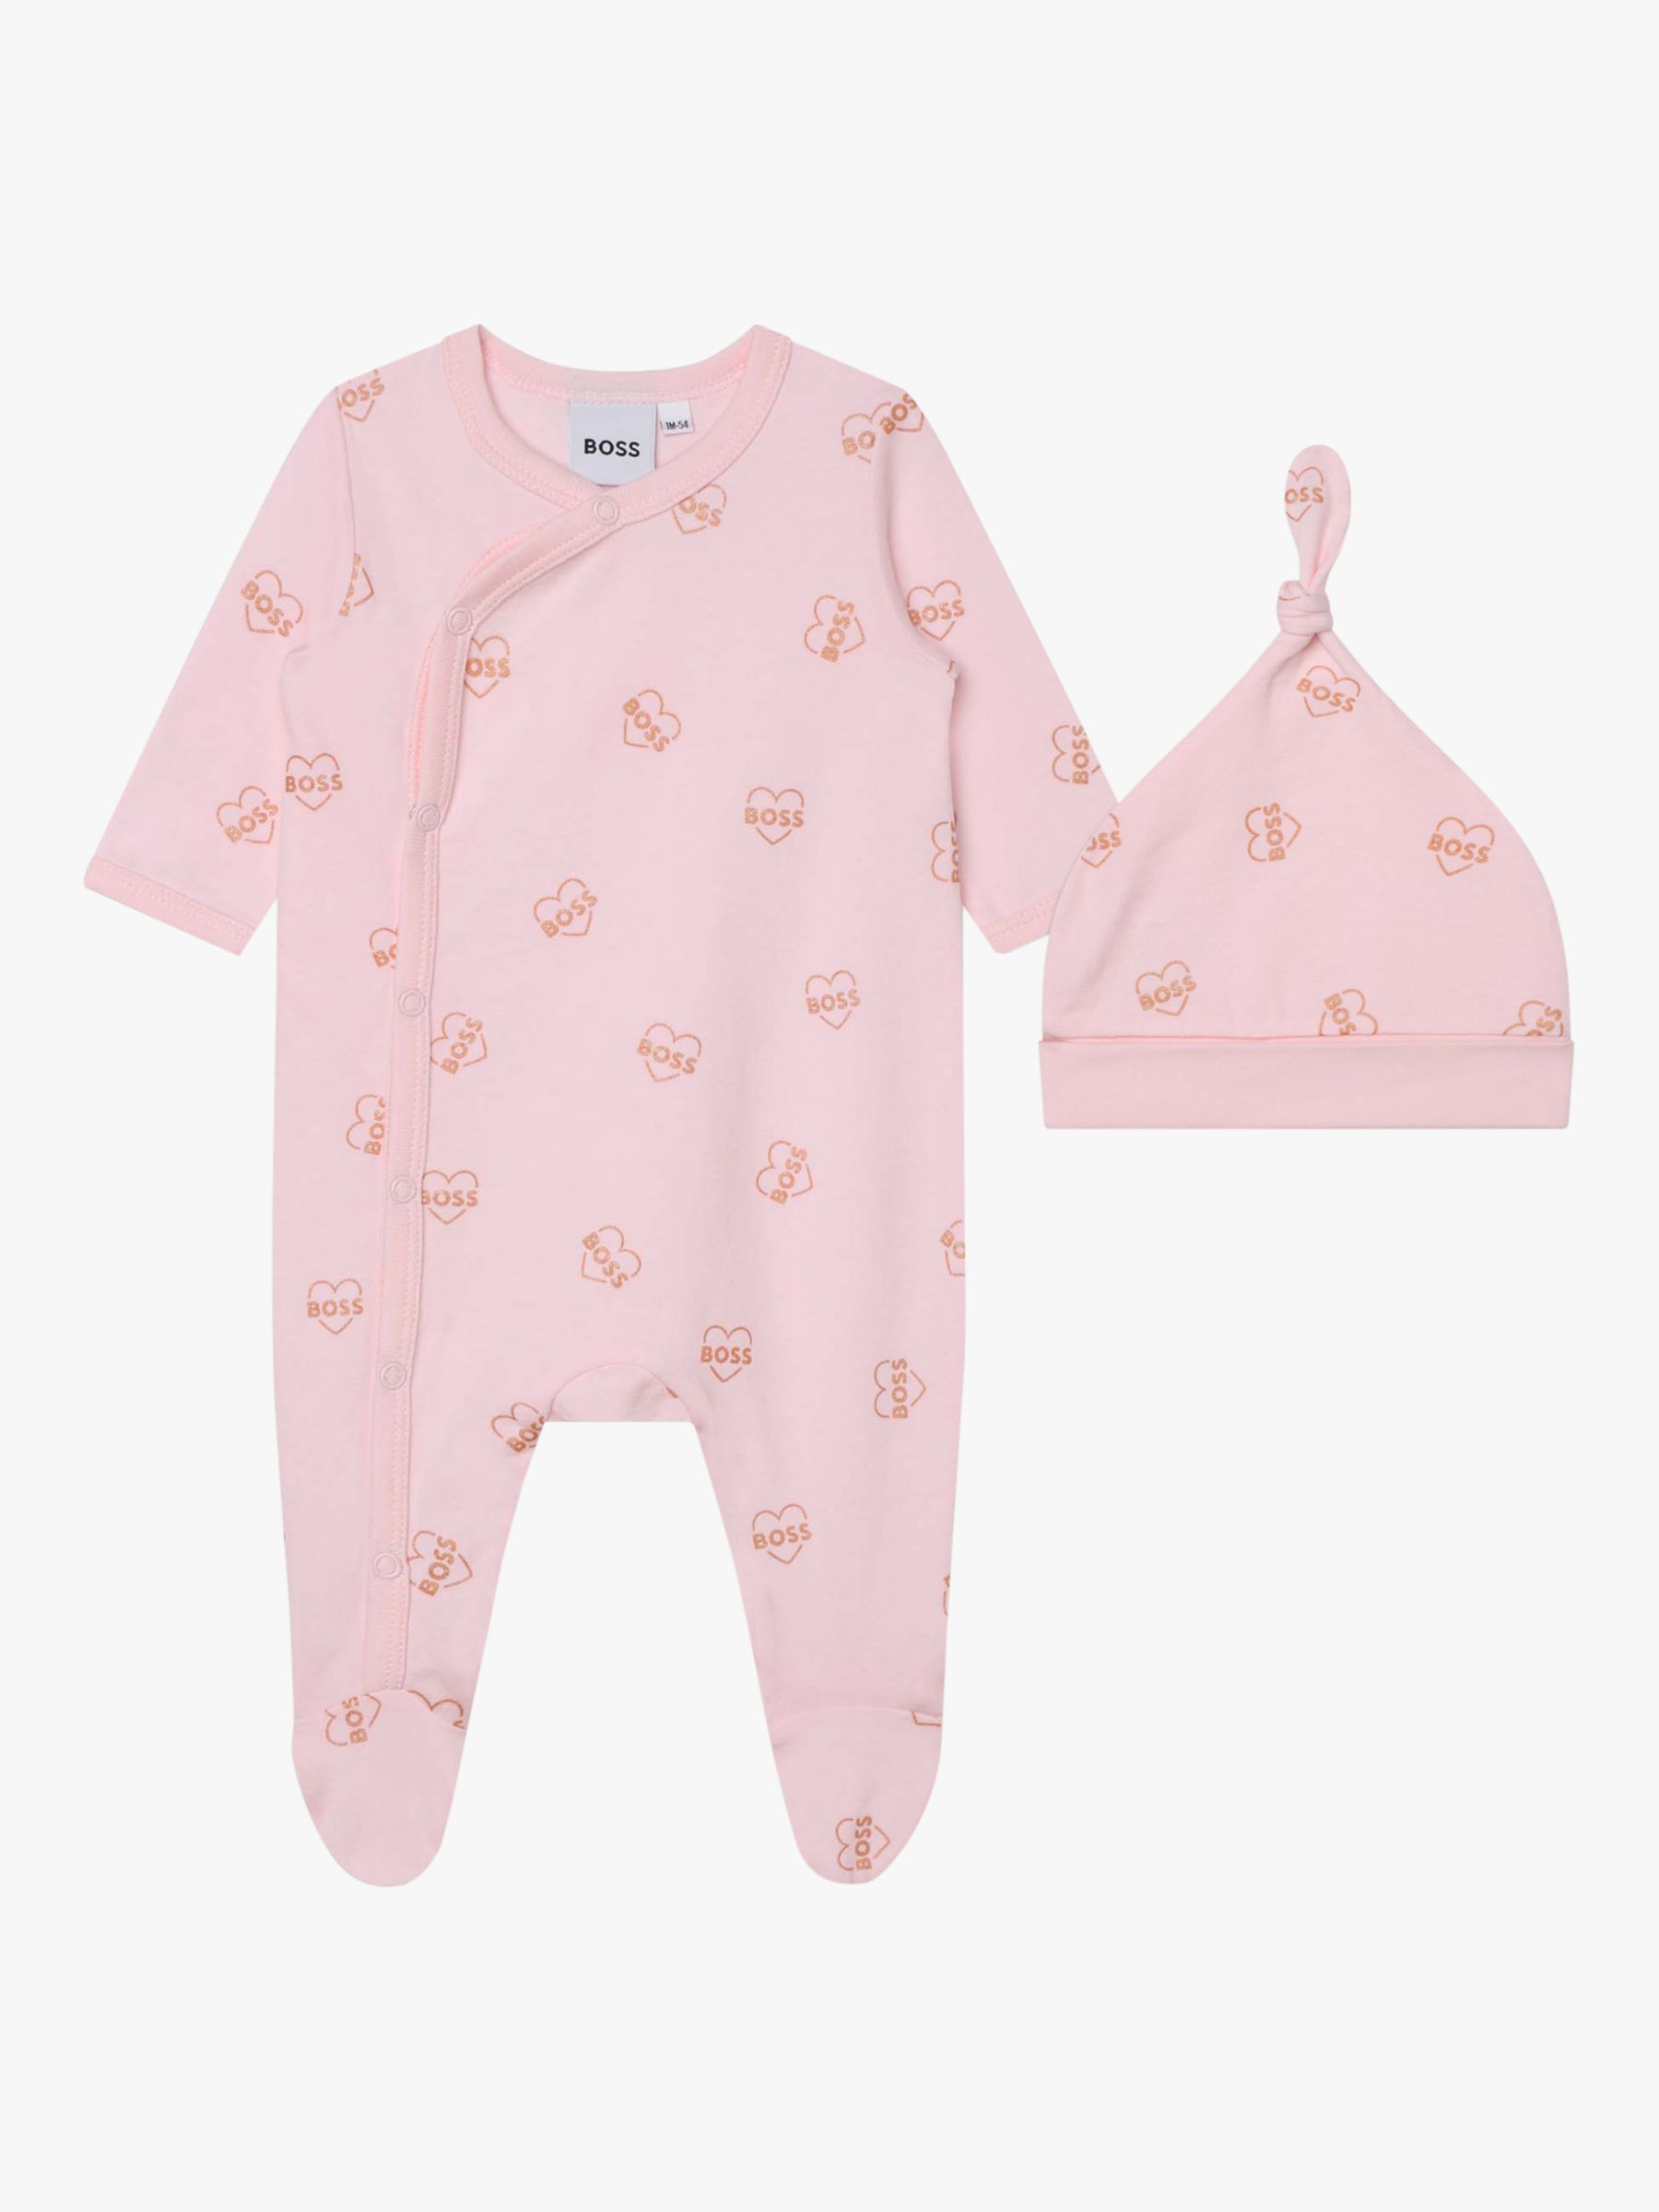 BOSS Baby Logo Heart Sleepsuit & Hat Set, Light Pink, 9 months